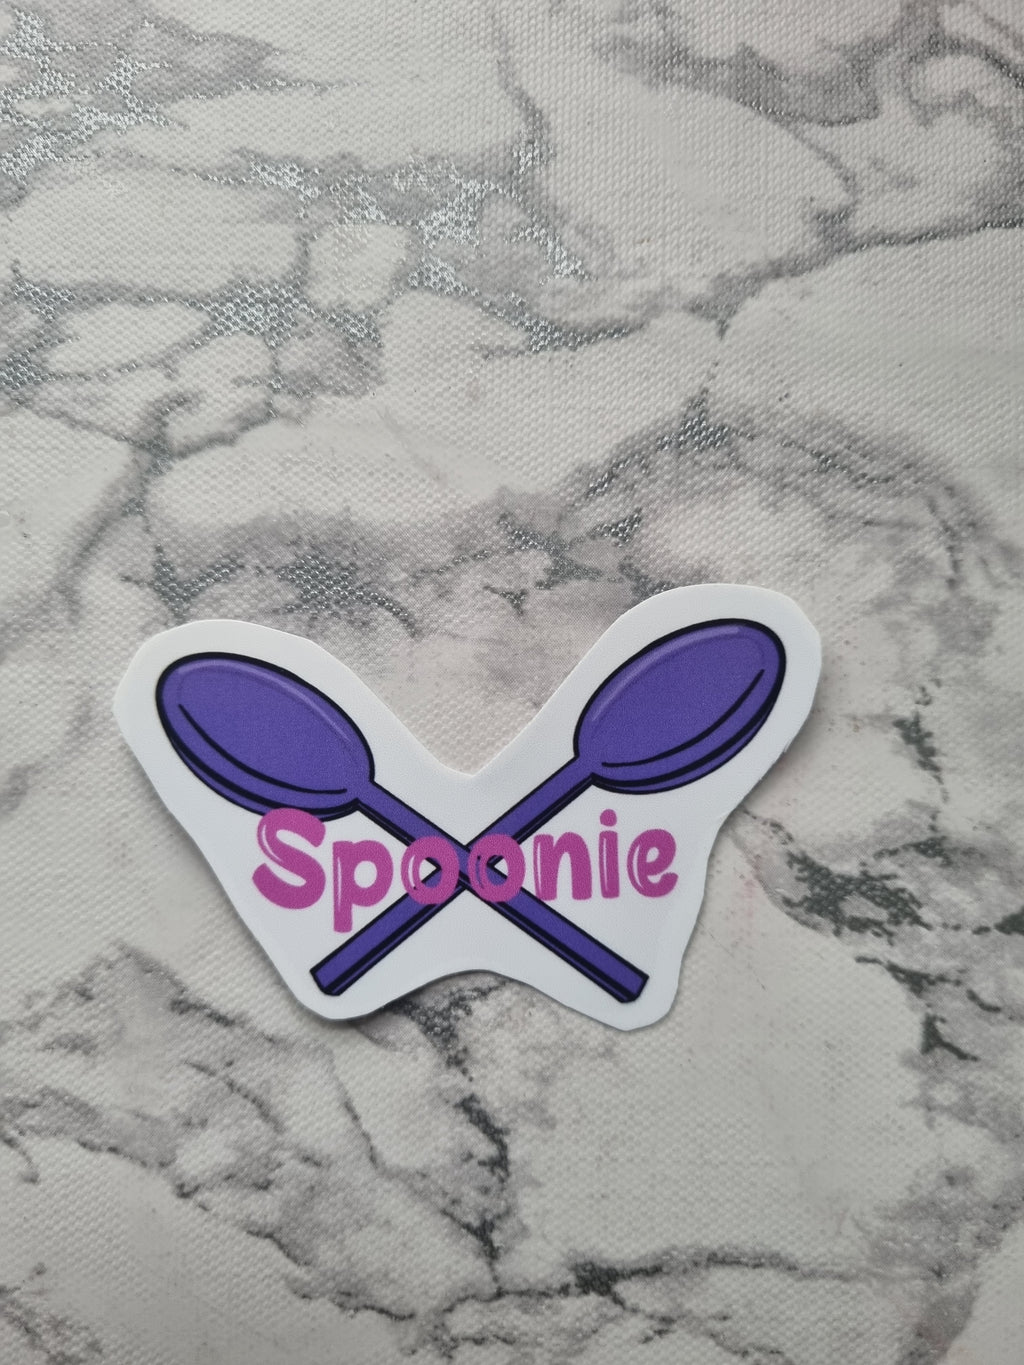 Spoonie Glossy Sticker